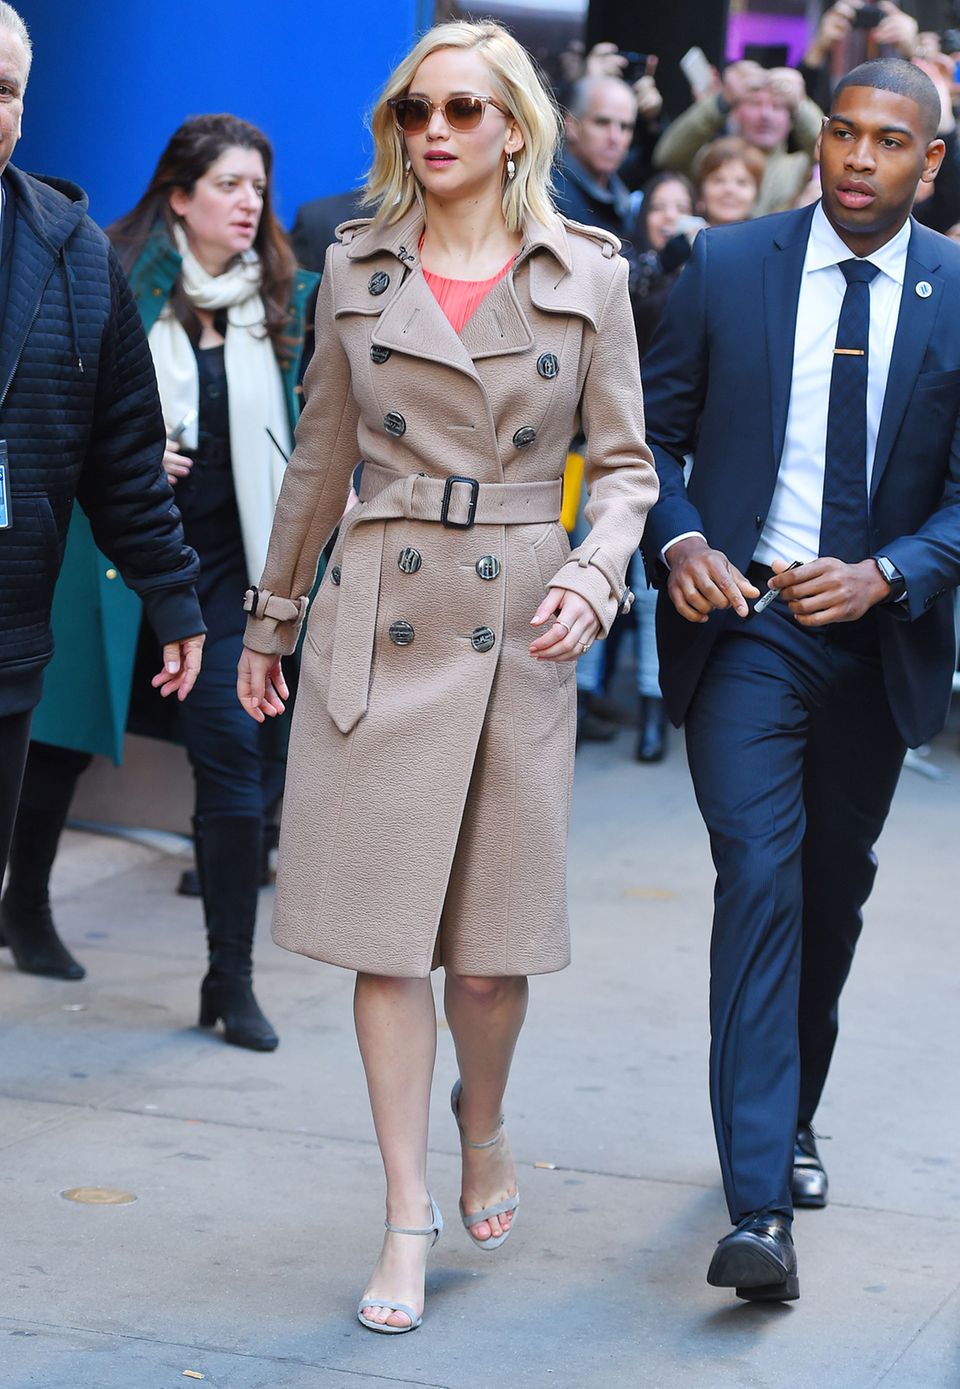 Obwohl sich der Trenchcoat von Jennifer Lawrence farblich eher bedeckt hält, ist er ein echter Hingucker. Sonnenbrille und Pumps stimmt die Schauspielerin gekonnt auf die natürliche Farbwelt ihres Mantels ab und rundet den modernen Winter-Style damit ab.